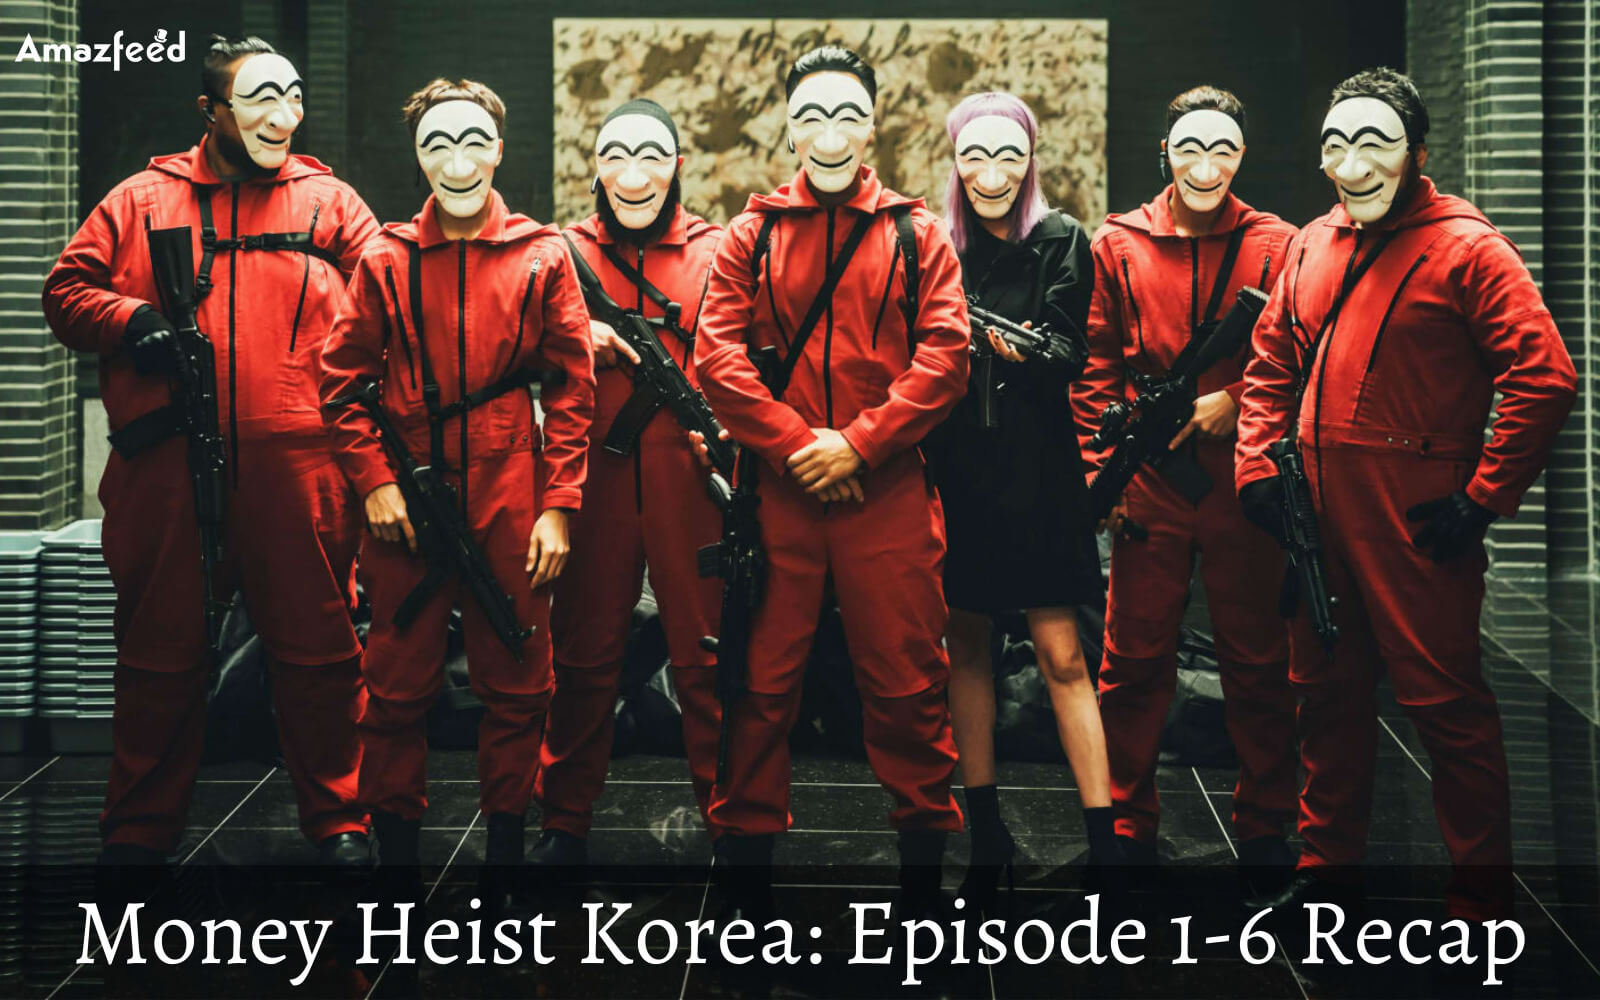 Money Heist Korea Episode 1-6 Recap